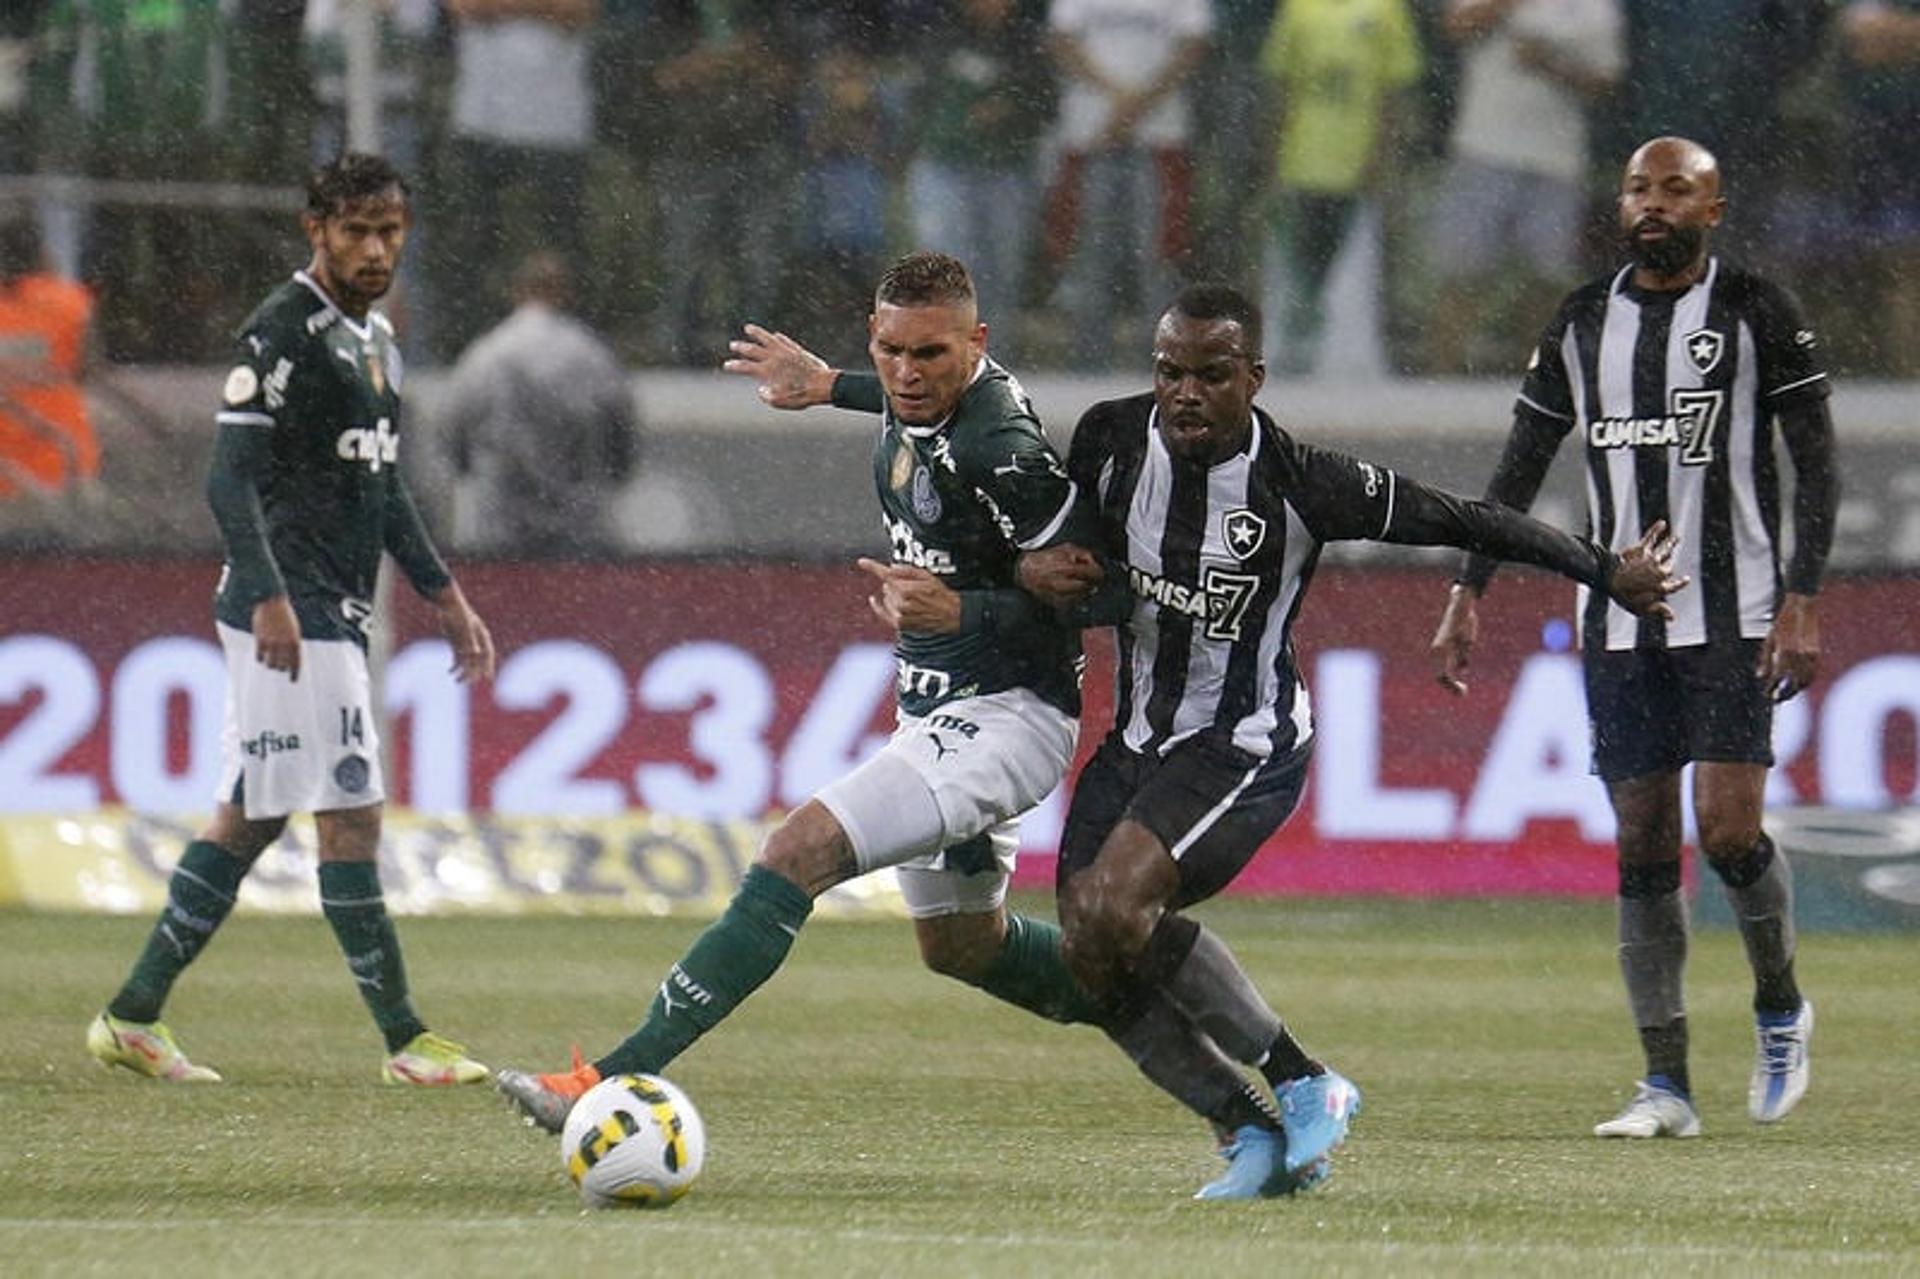 Palmeiras x Botafogo